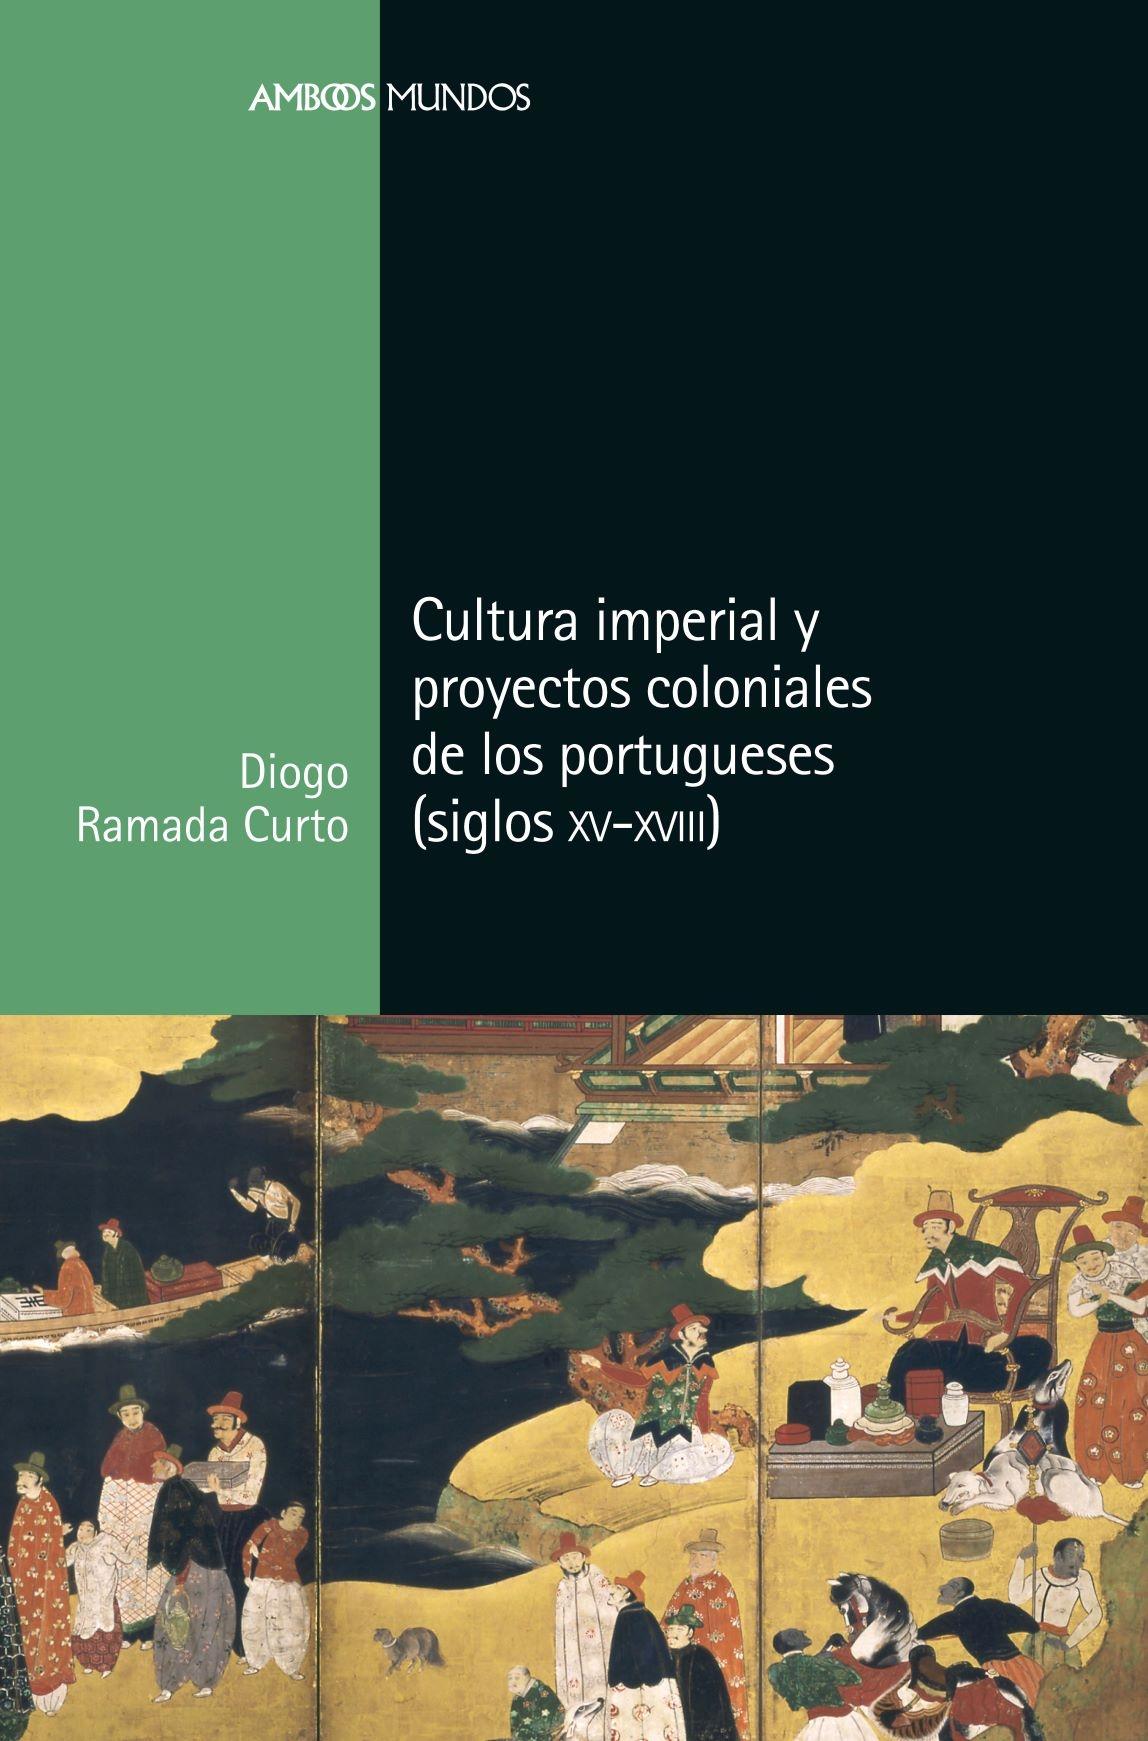 CULTURA IMPERIAL Y PROYECTOS COLONIALES DE LOS PORTUGUESES "SIGLOS (XV-XVIII)"